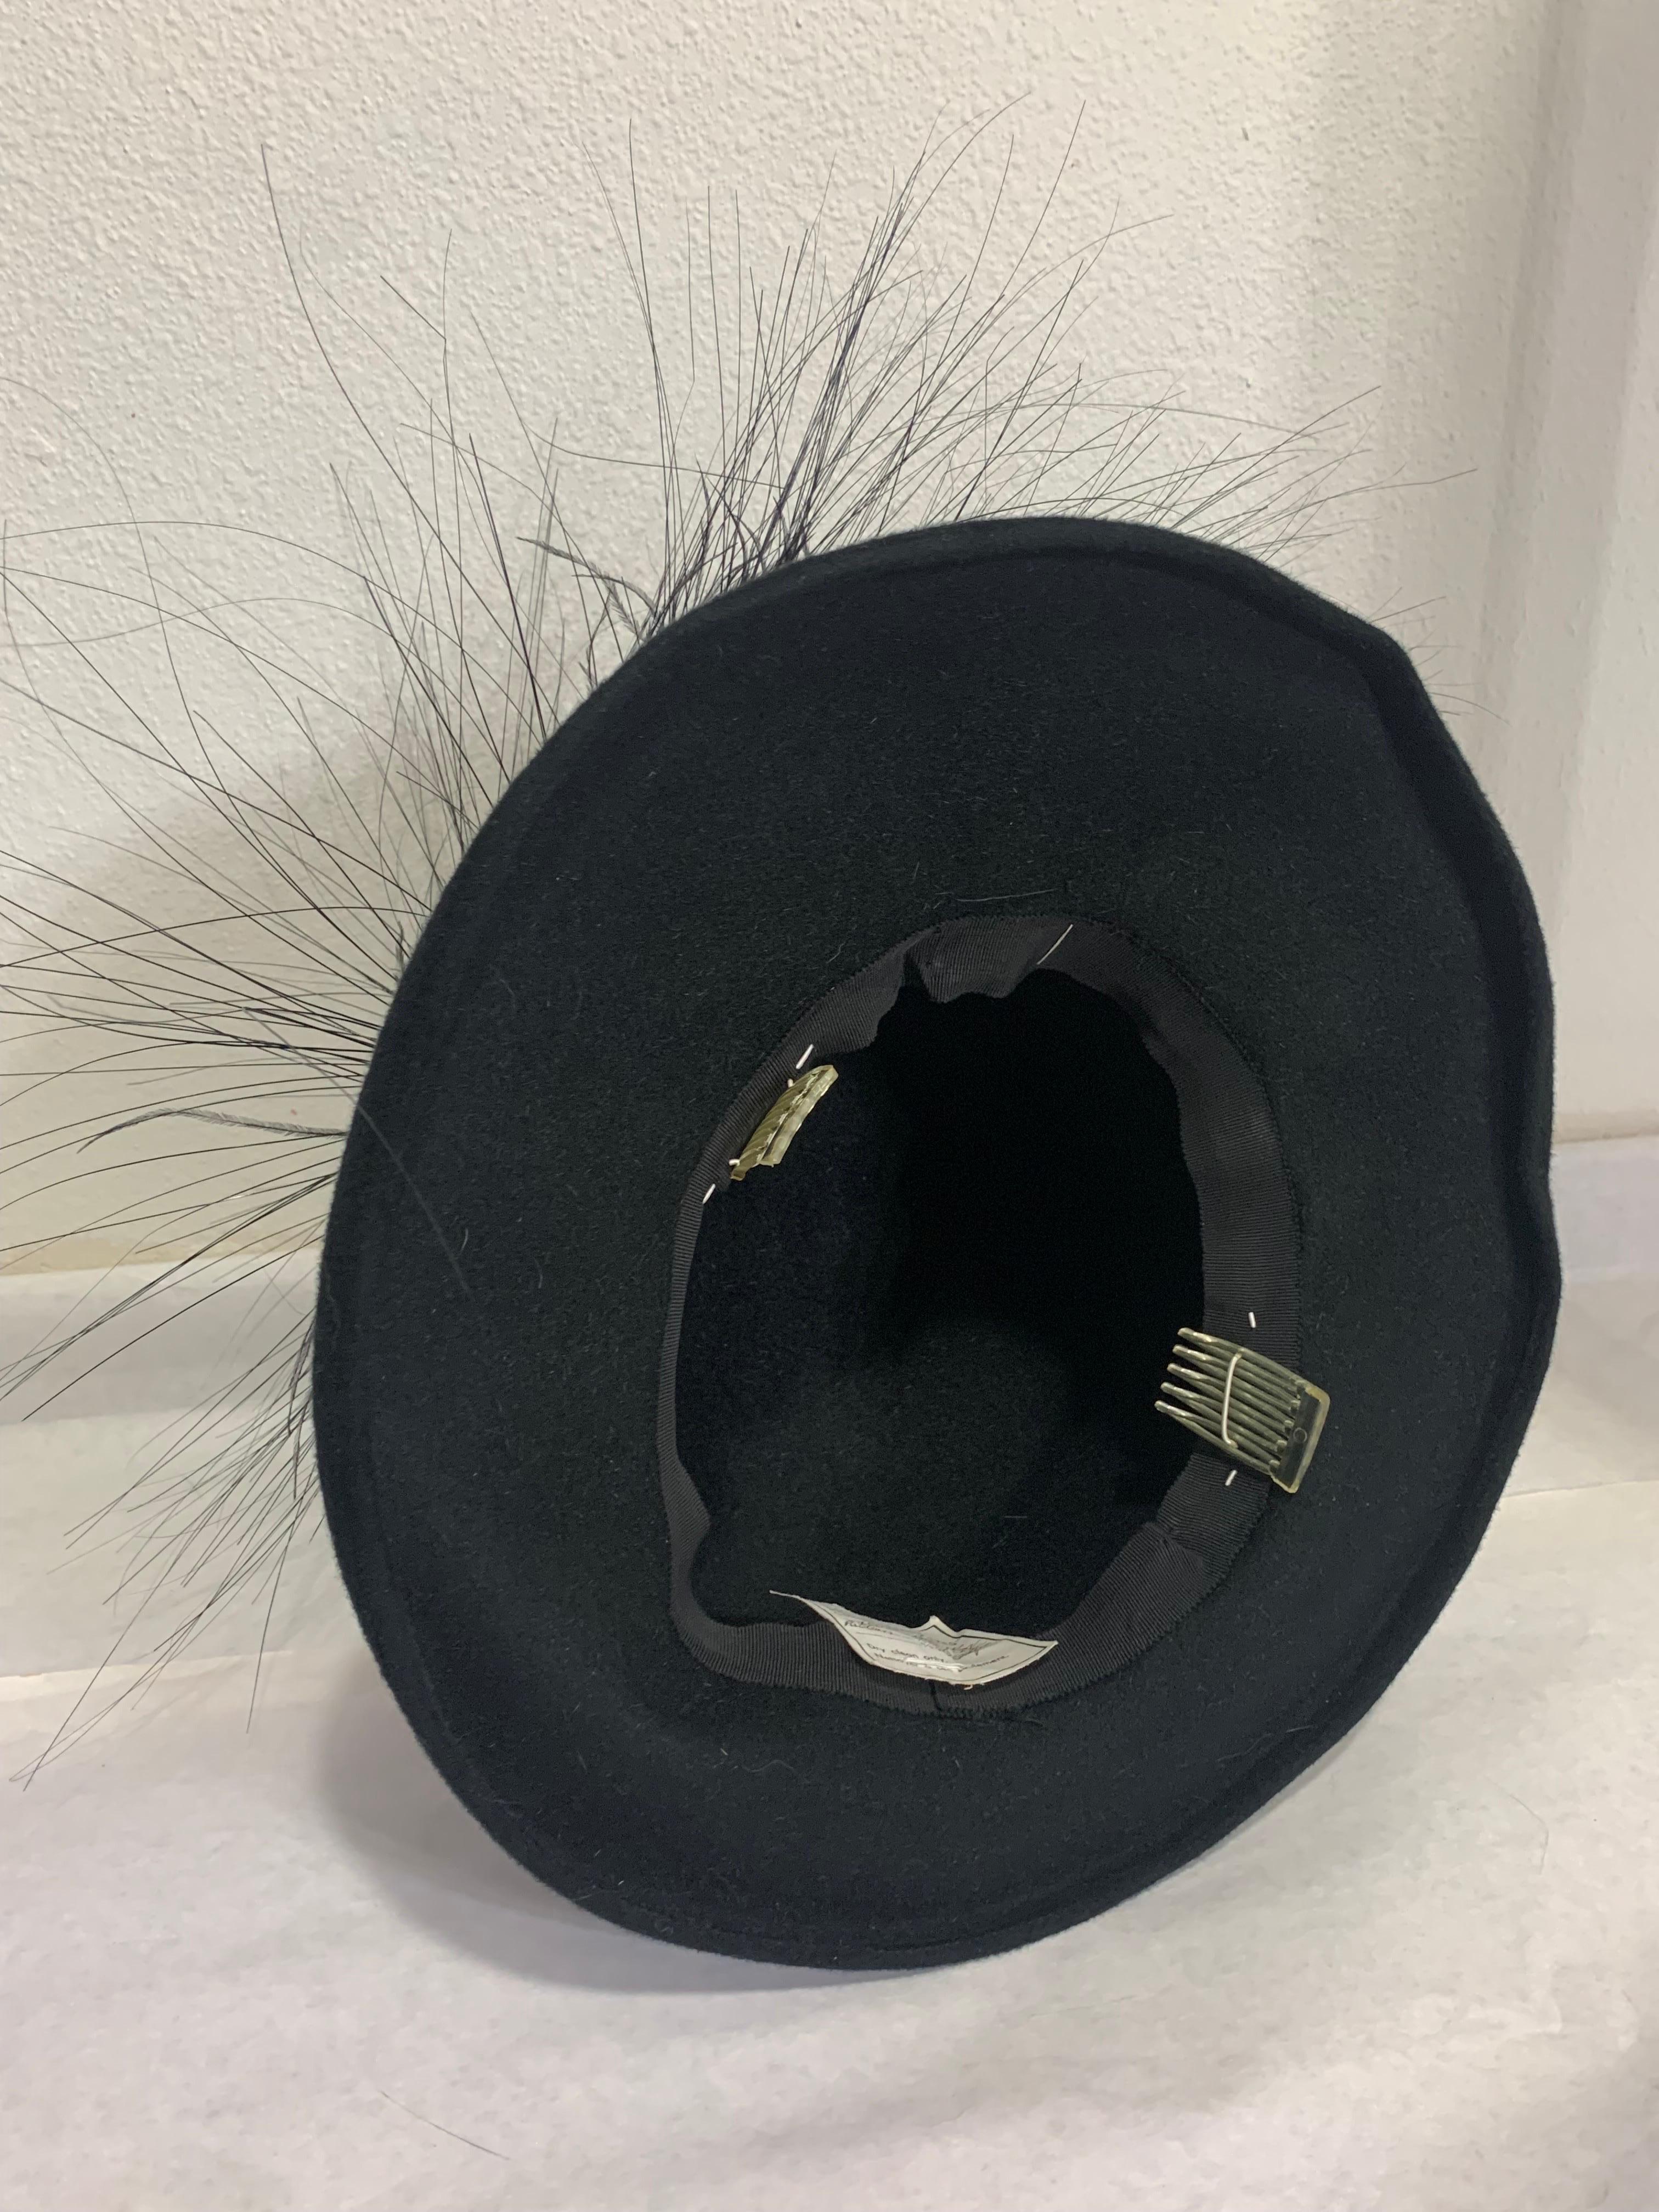 Maison Michel Black Fur Felt Short-Brim Tall Crown Hat w Extravagant Feathers  For Sale 6